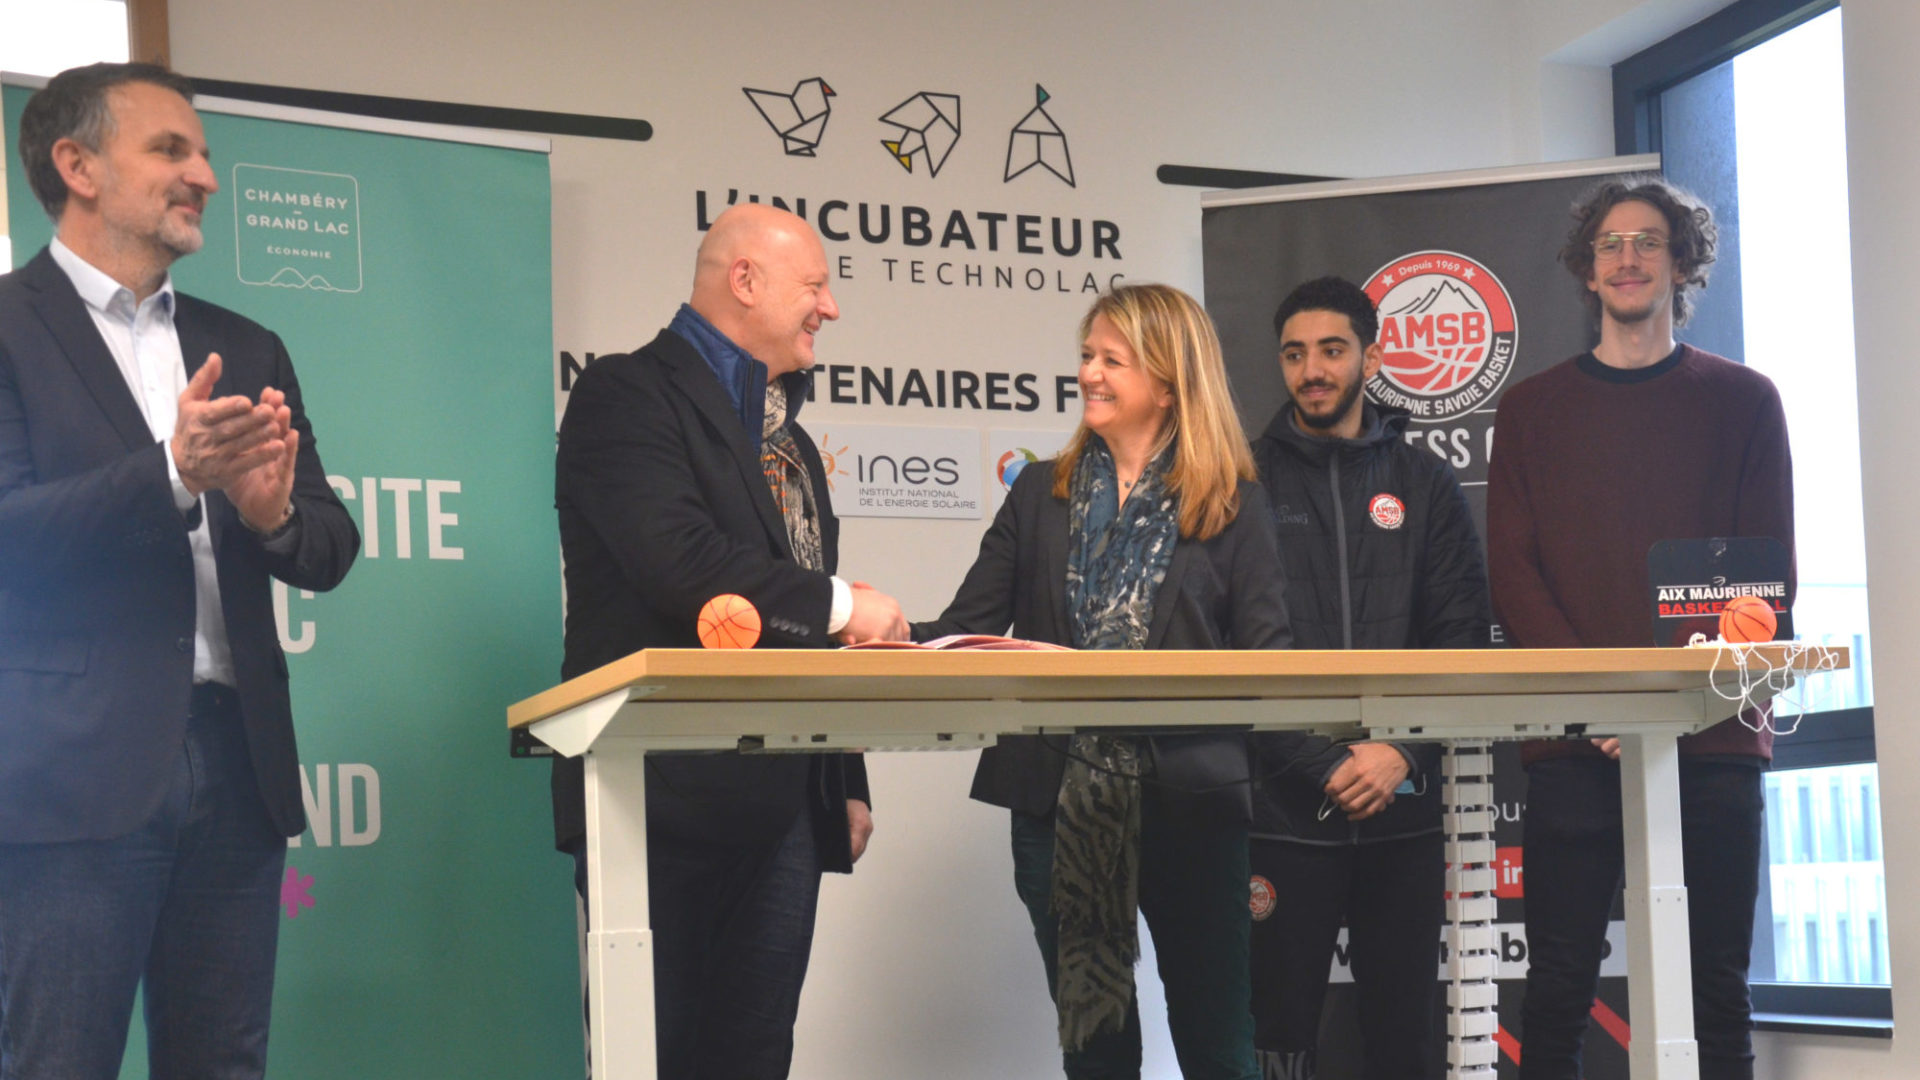 Chambéry–Grand Lac économie et Aix Maurienne Savoie Basket collaborent pour favoriser l’entrepreneuriat et l’innovation  dans le milieu sportif